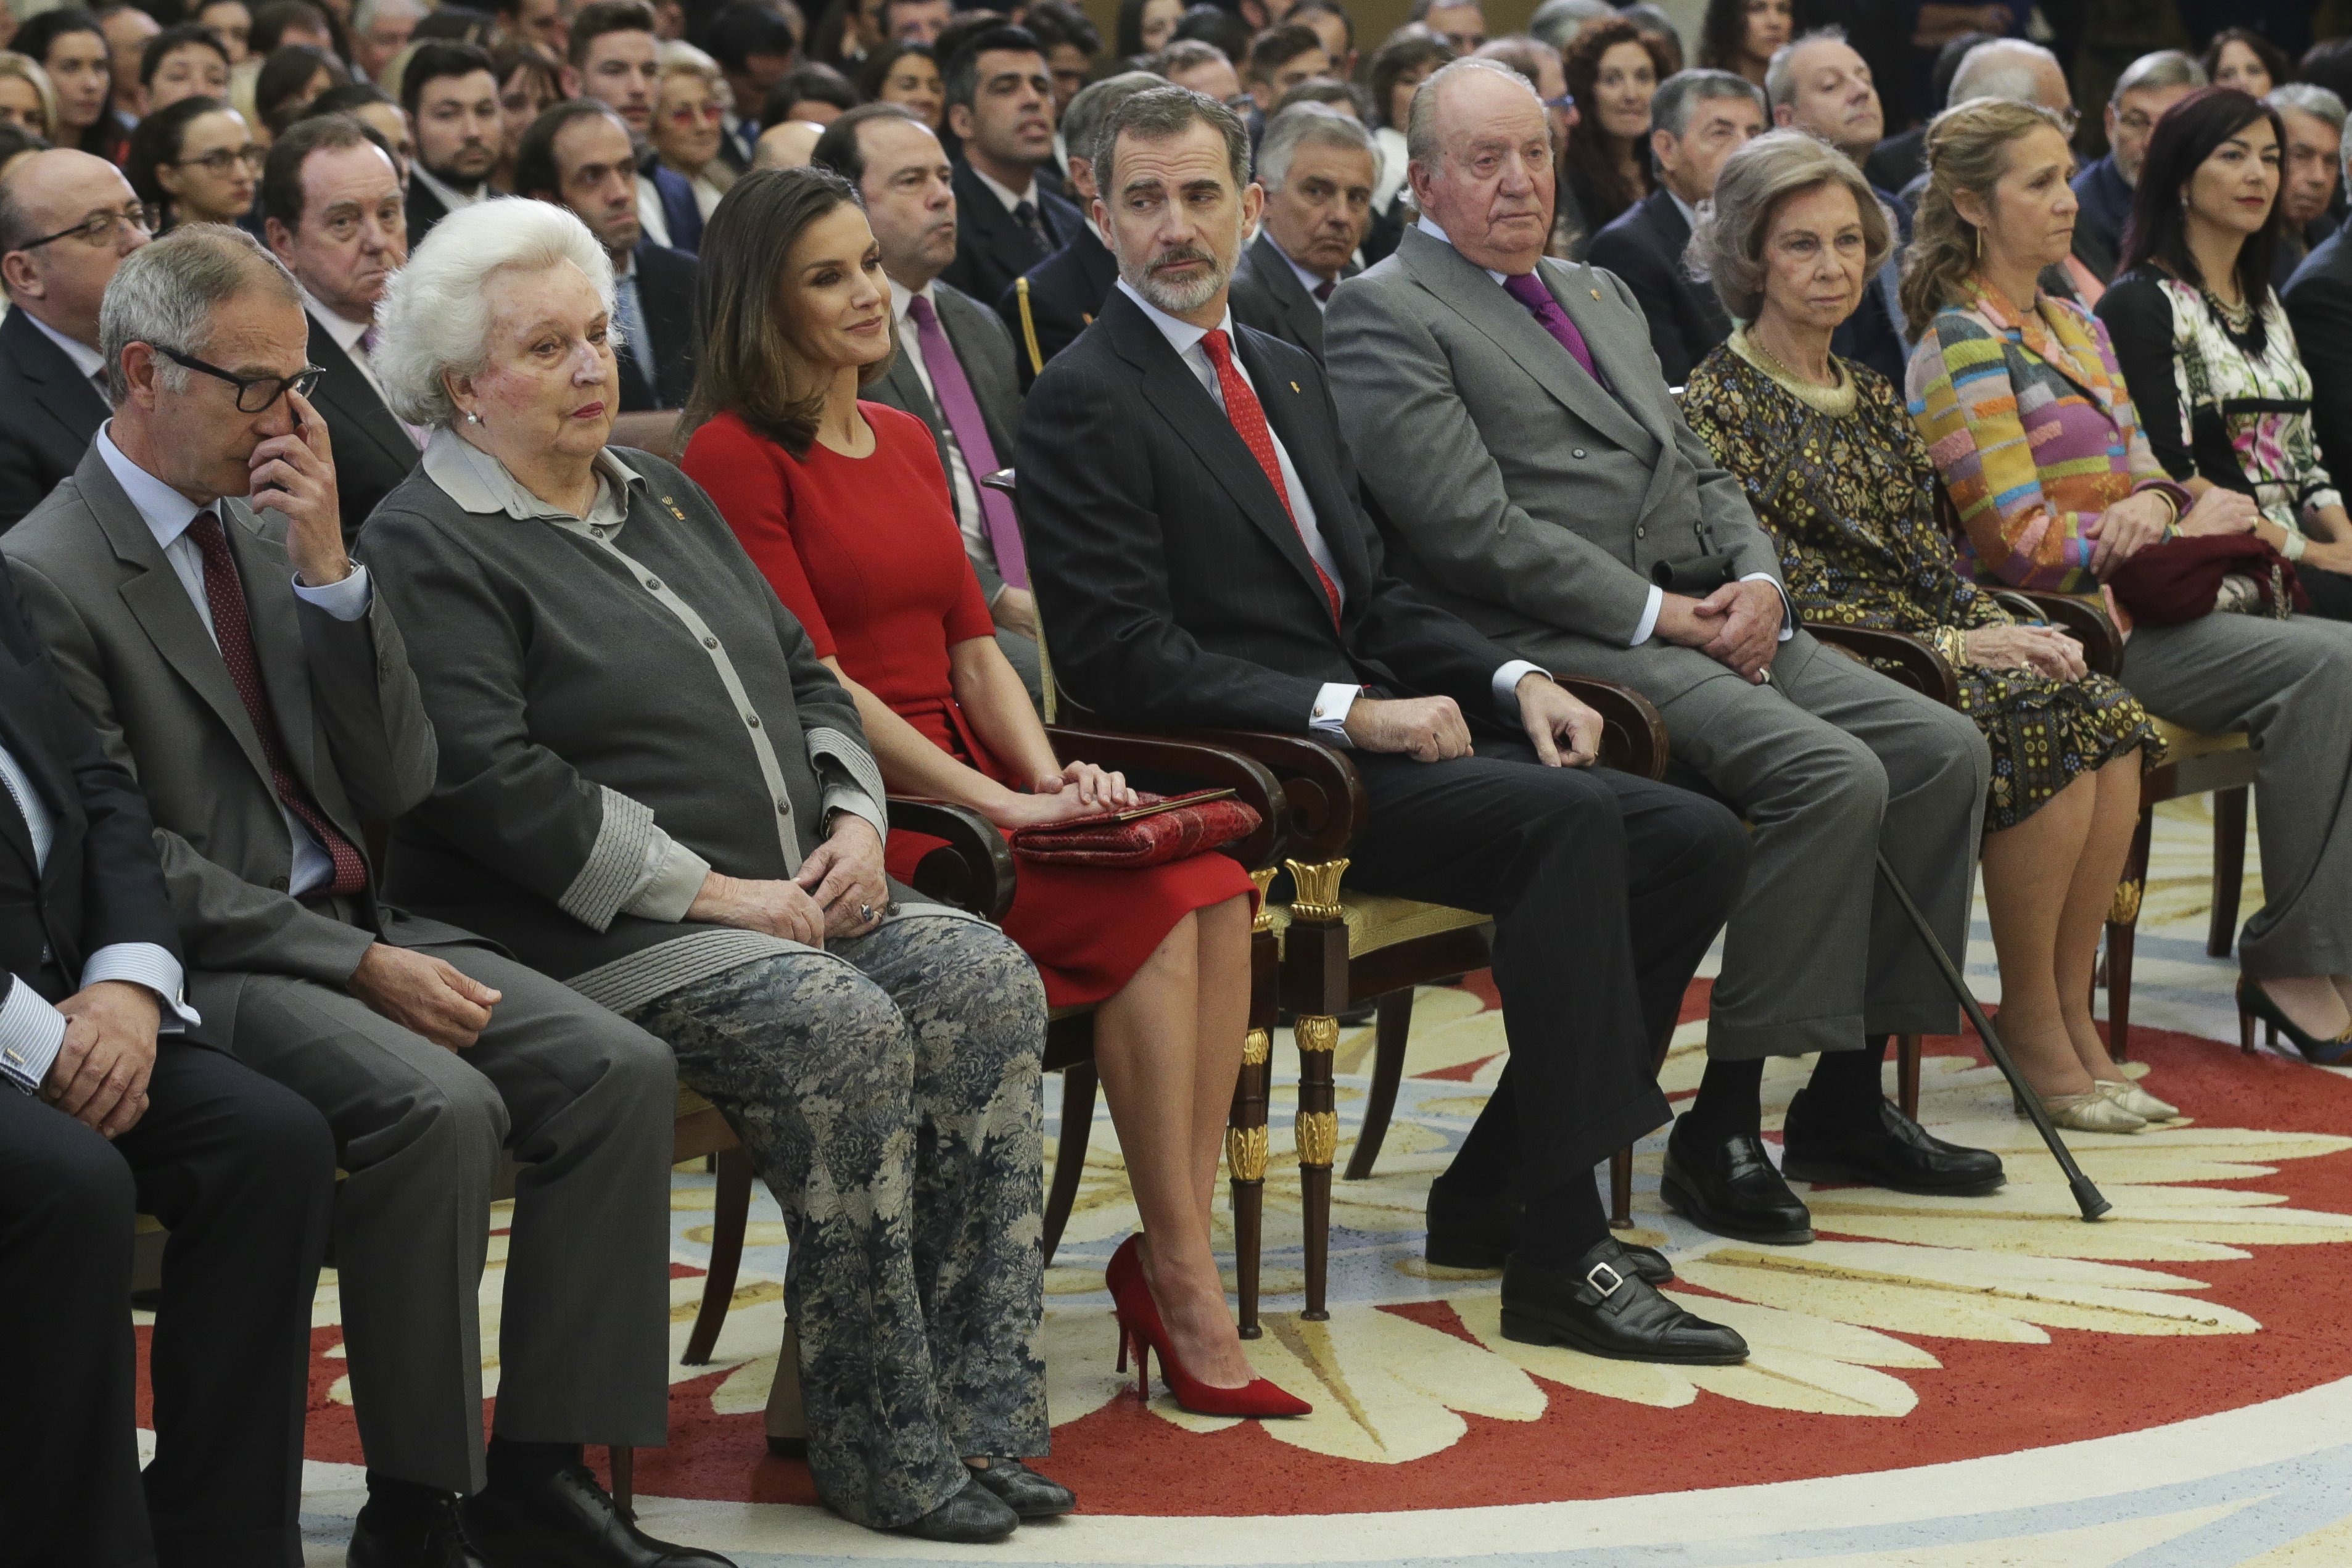 Felip VI i Joan Carles no s'asseuran junts al funeral d'Elisabet II, 100% segur: el motiu real